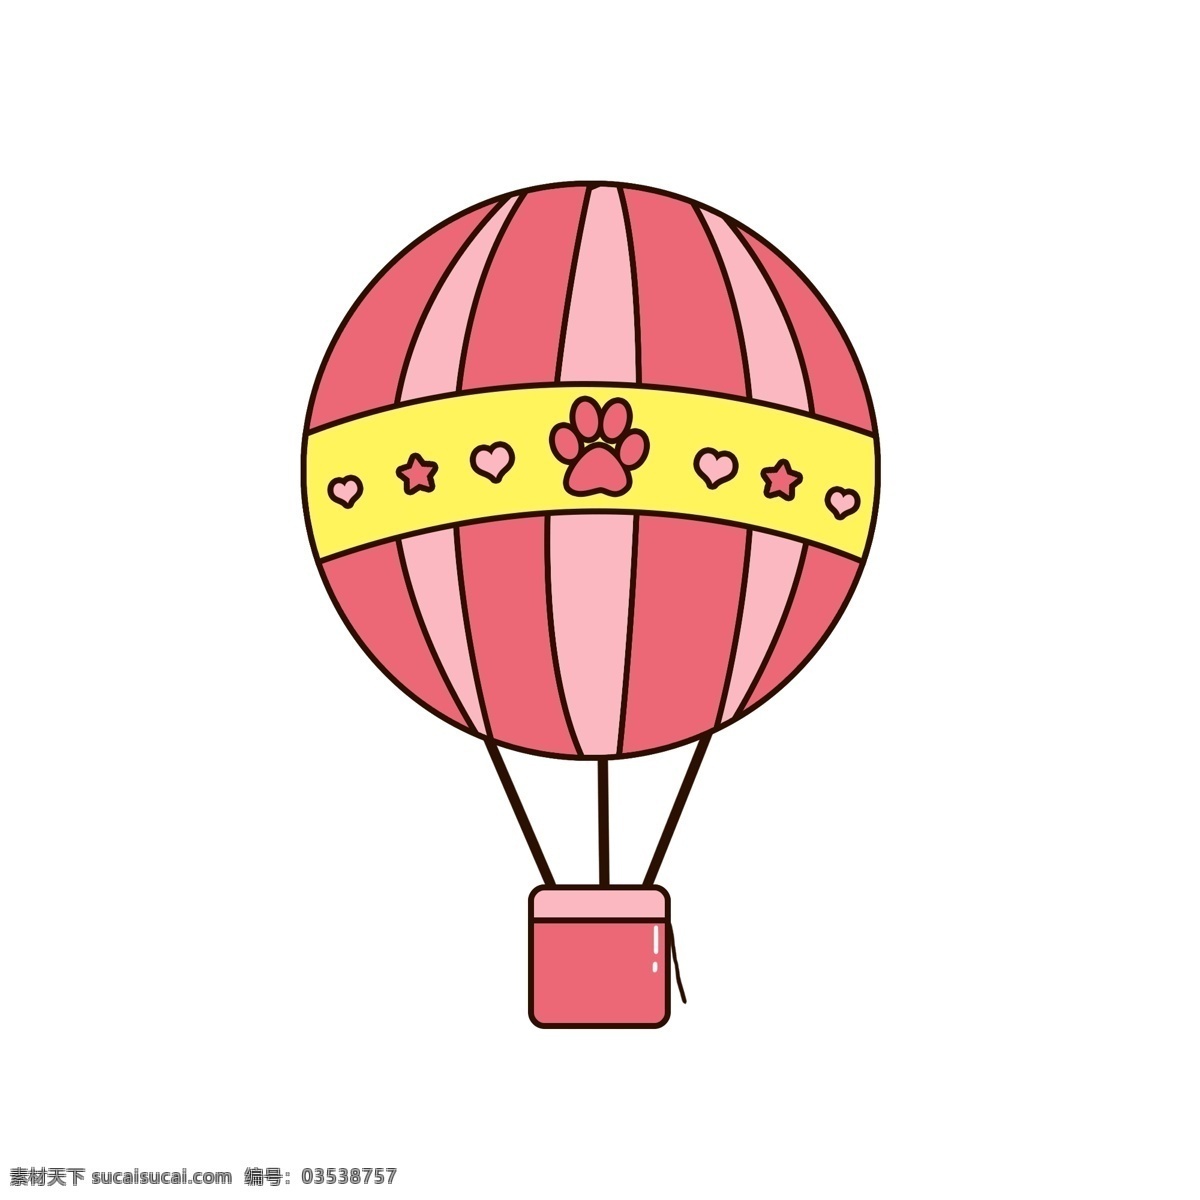 卡通 猫 爪 粉色 热气球 爱心 星星 元素 少女心 猫爪 可爱 黄色